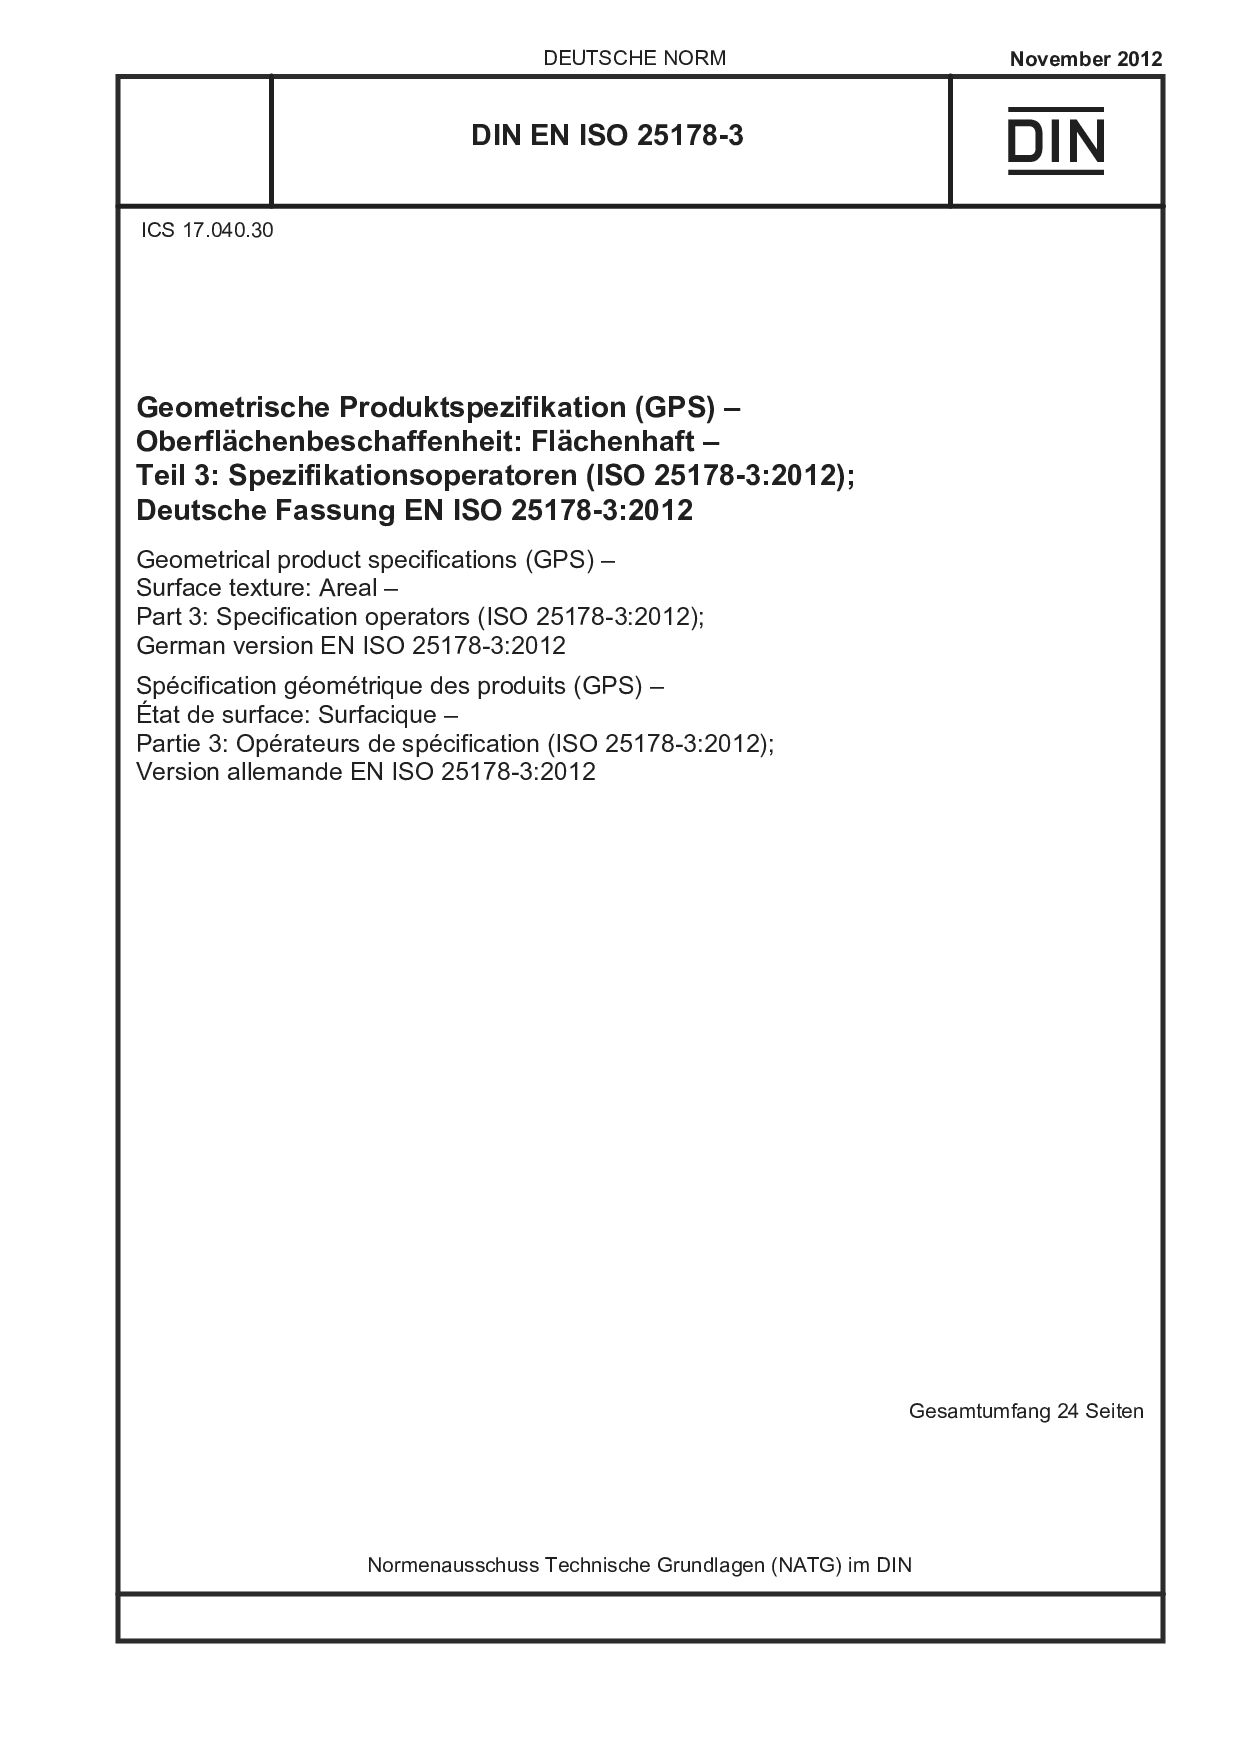 DIN EN ISO 25178-3:2012-11